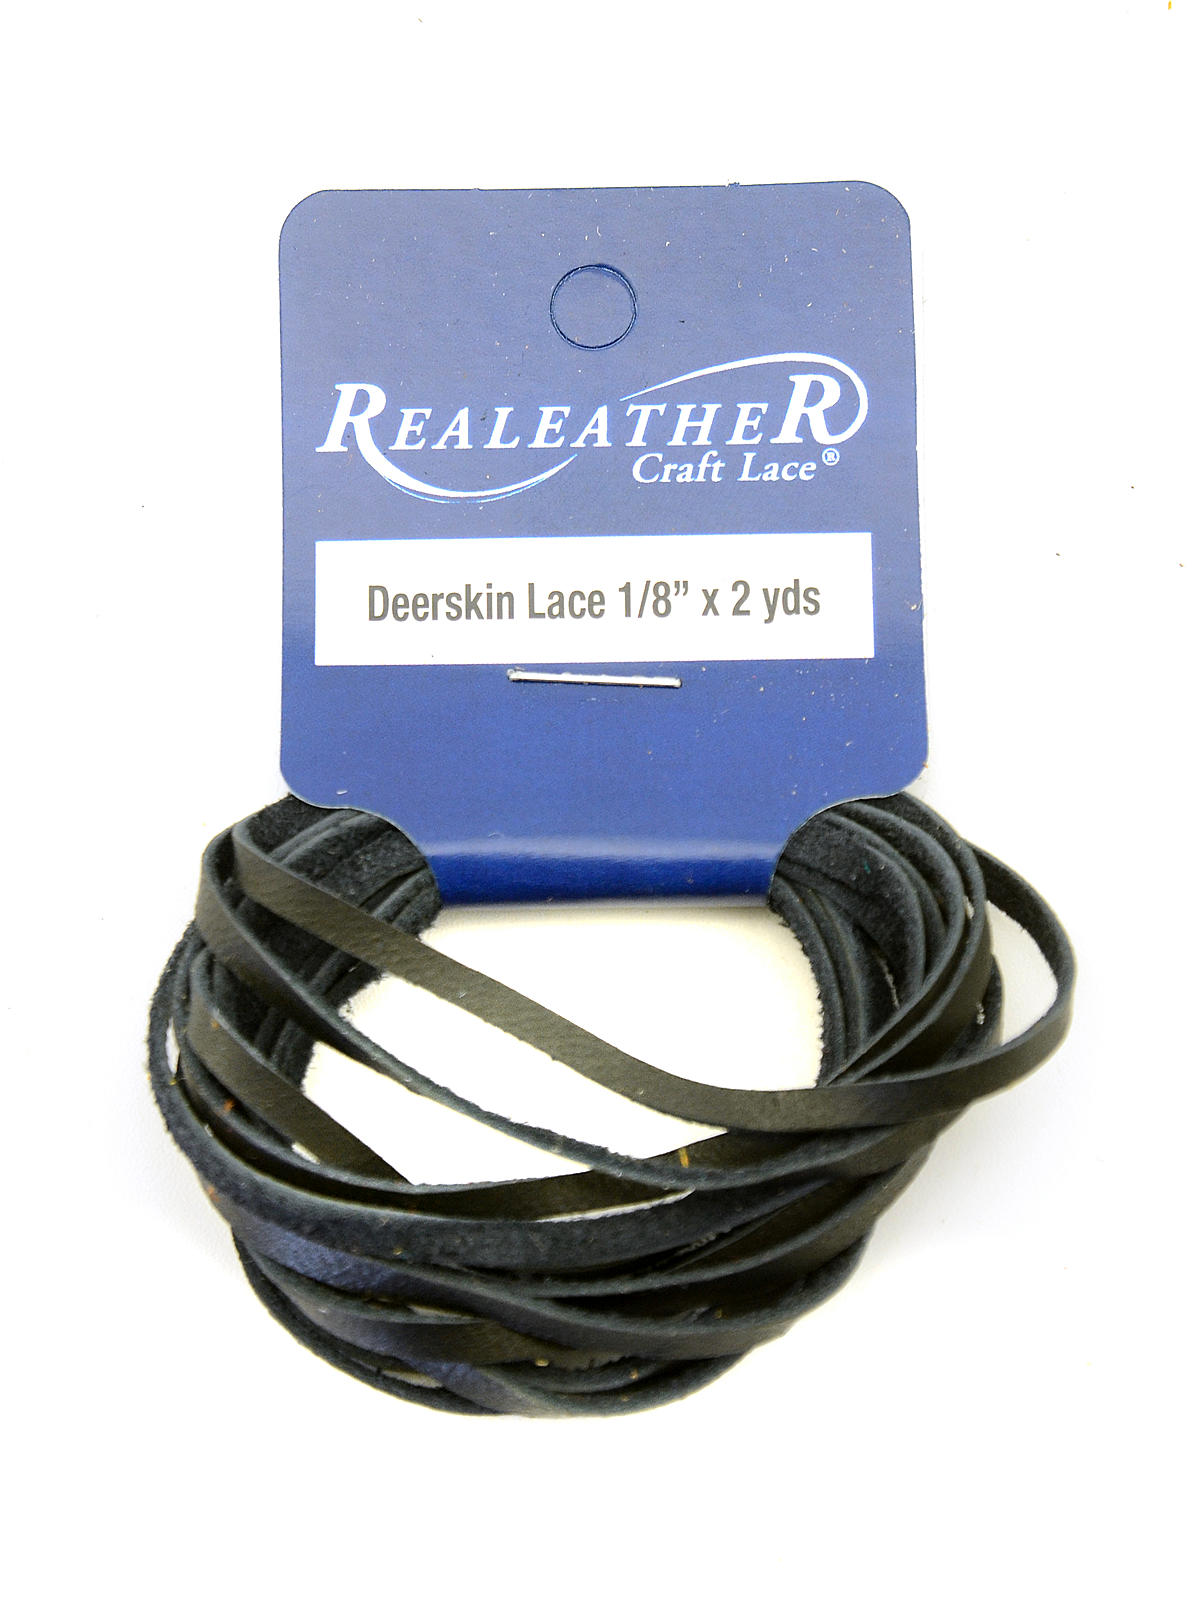 Realeather Deerskin Lace Black 1 8 In. X 2 Yds. Hank